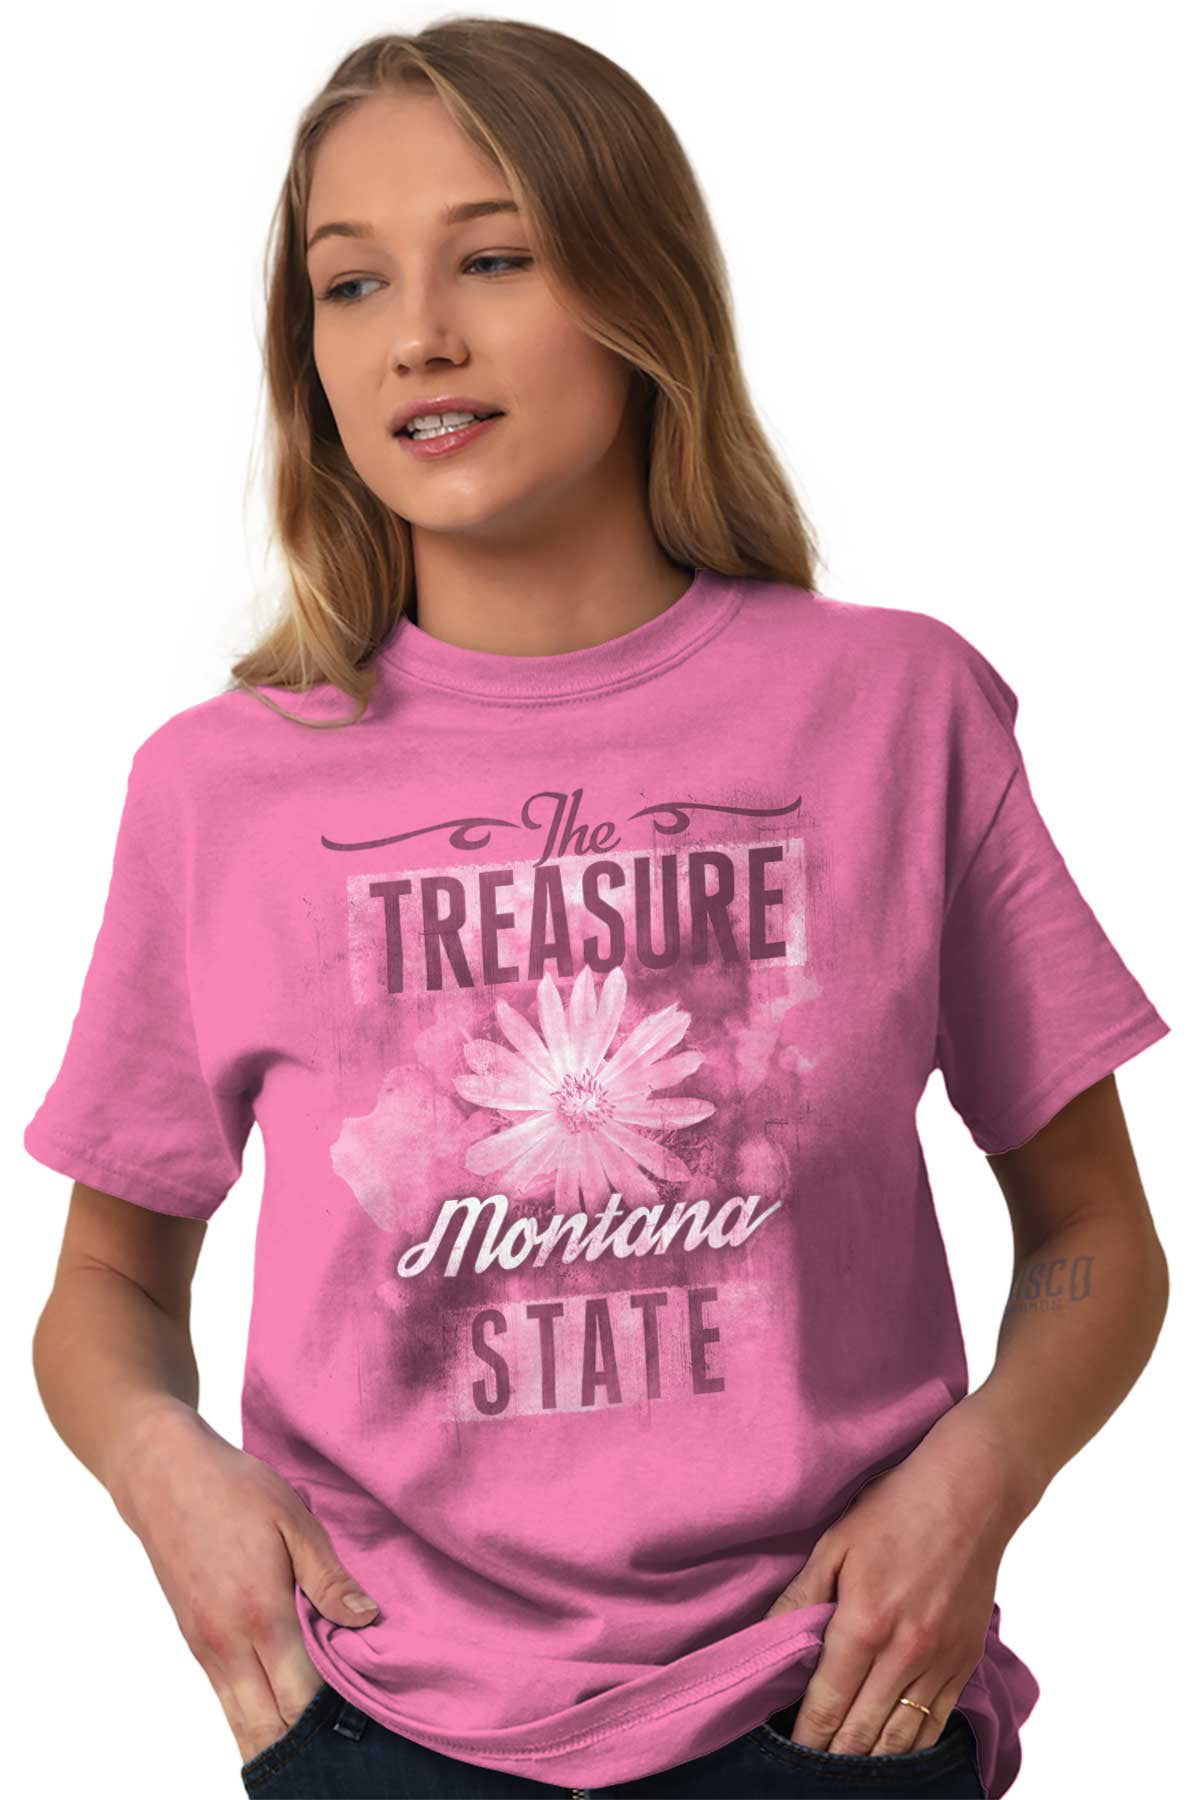 Montana Gifts for Women Shirts For Women Montana Shirts For Women Bozeman Shirts For Women Montana Women's T Shirts,